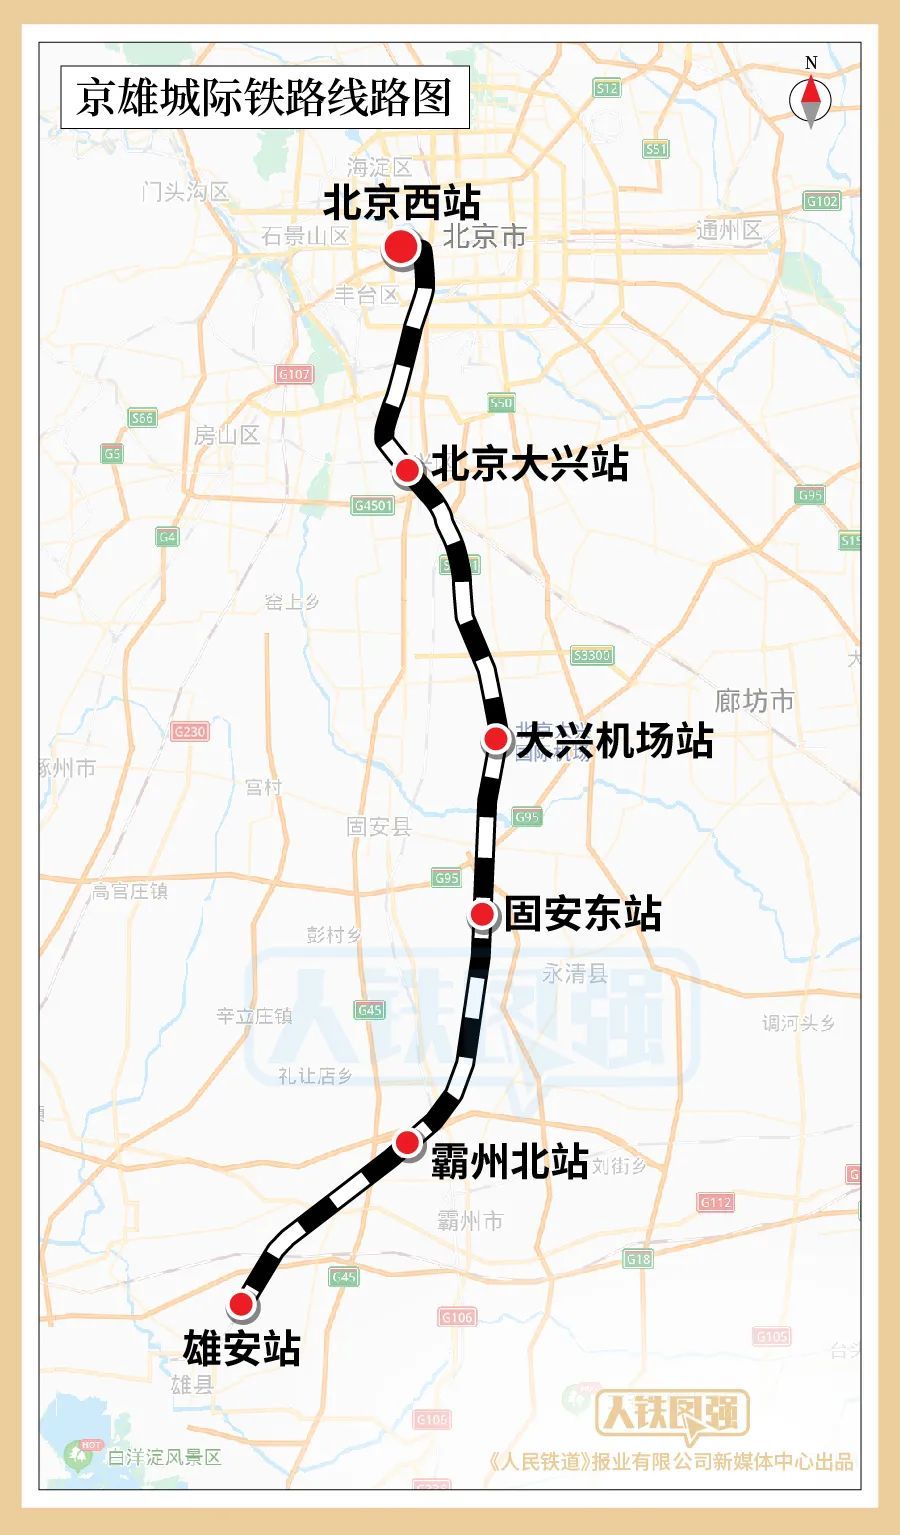 京雄城际铁路12月27日全线开通 北京西站至雄安新区最快50分钟